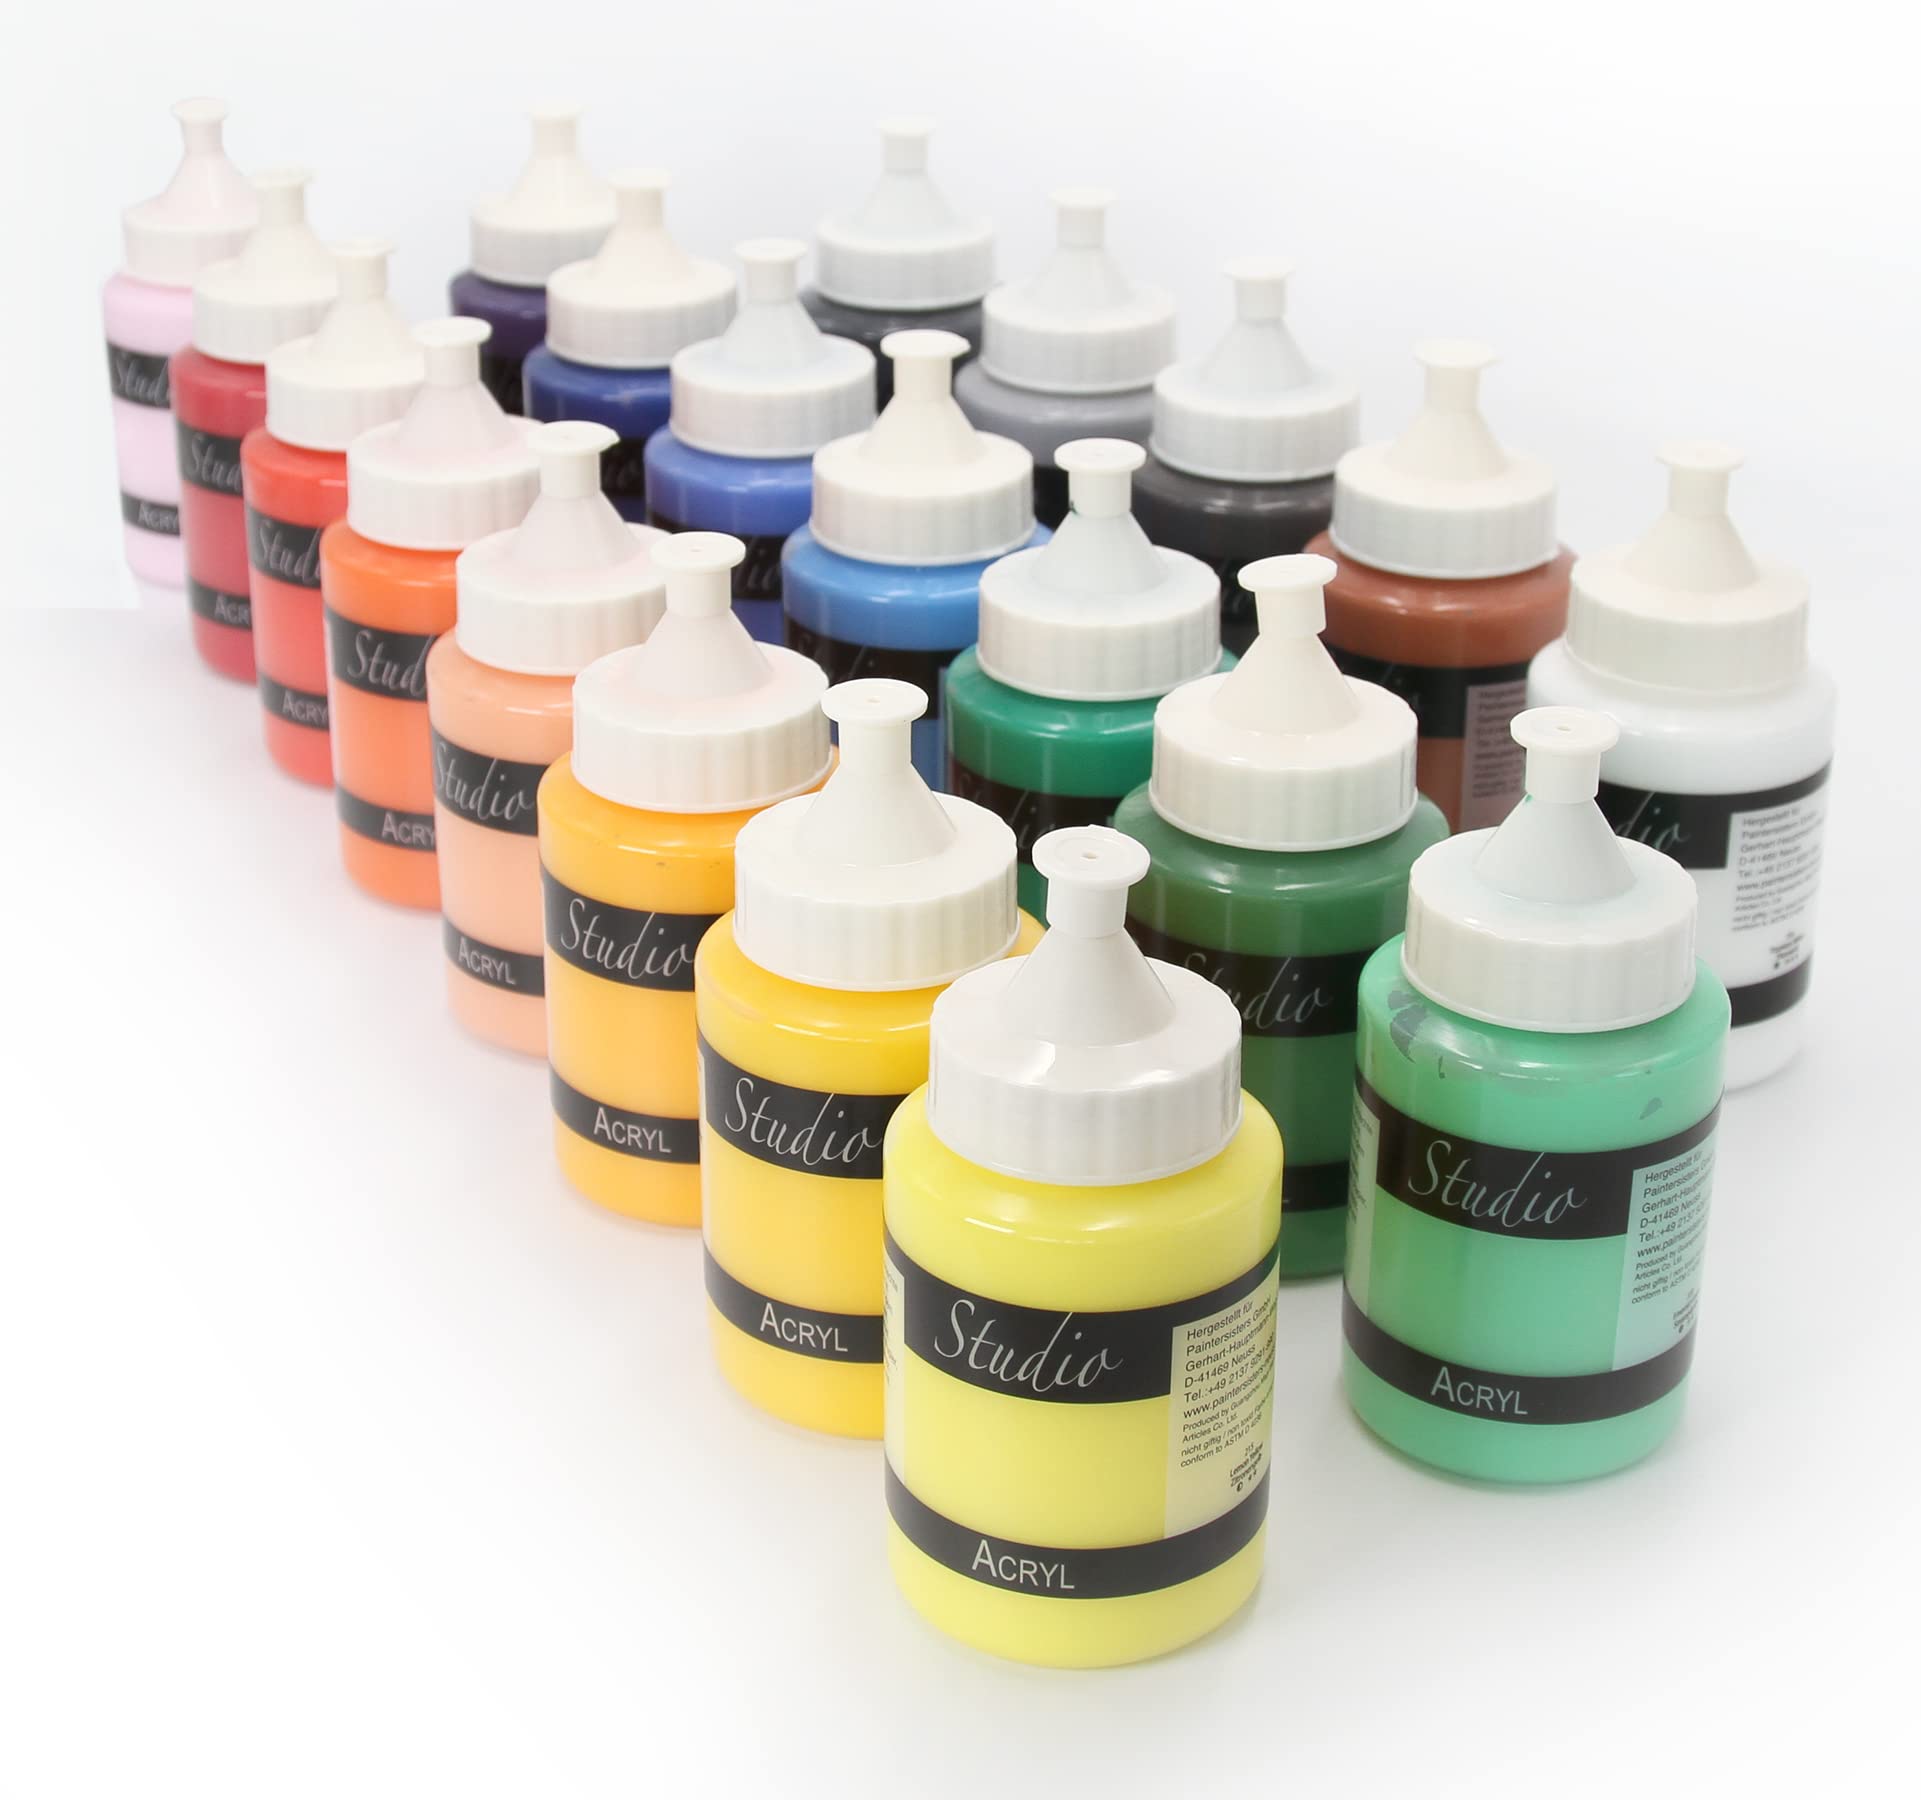 Magi® Acrylfarben Set Studio 20 x 250 ml – Acrylfarbe deckend, Wasserfest auf Leinwand, Stein, Holz, Künstlerfarben für Hobby-Künstler & Profis